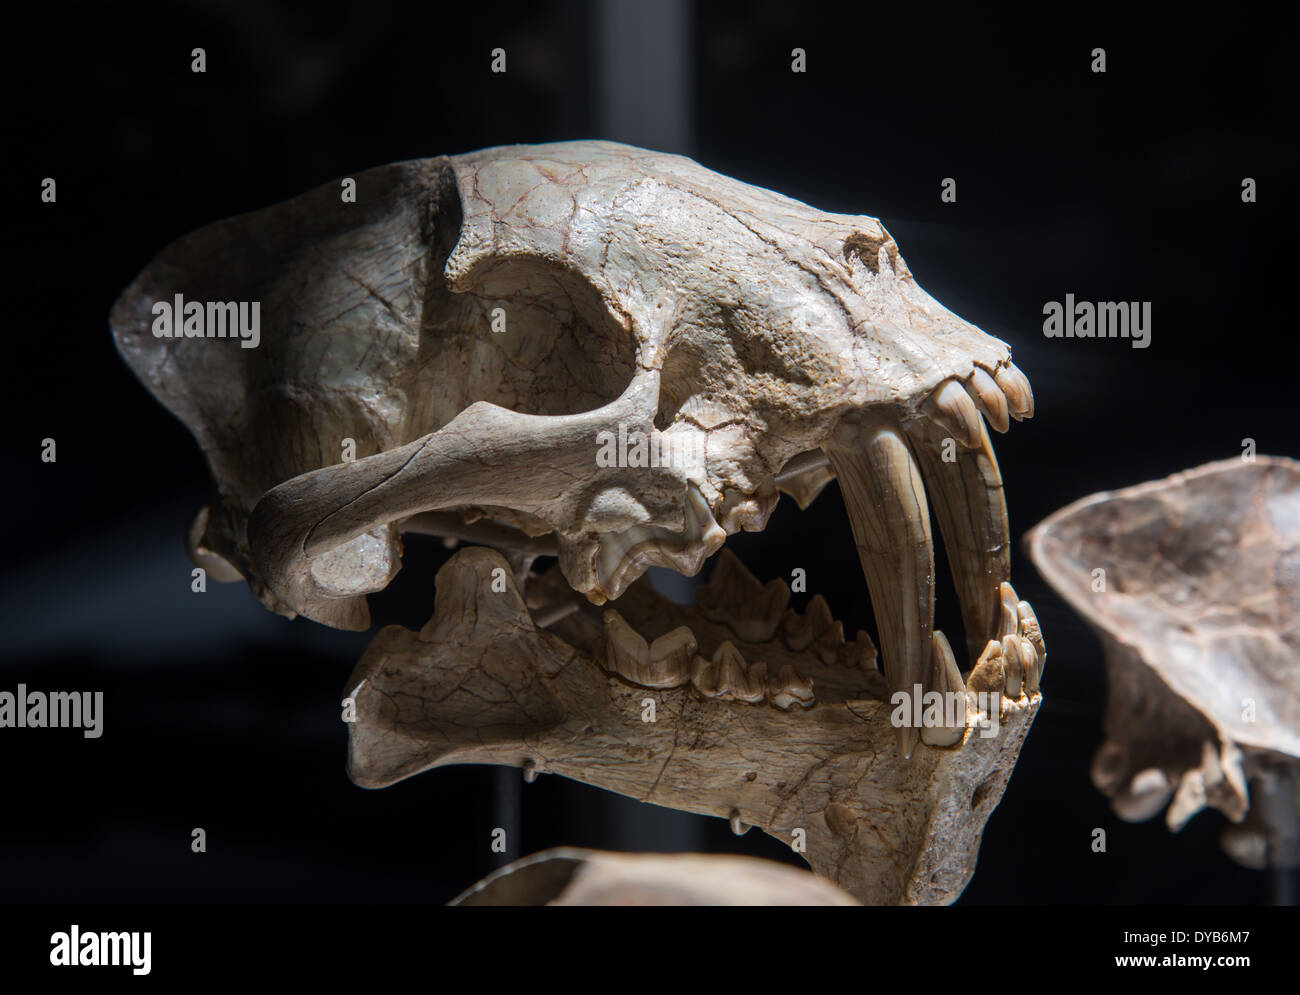 Cranio fossile di una sciabola-dentata cat. Età Oligocene. Foto Stock